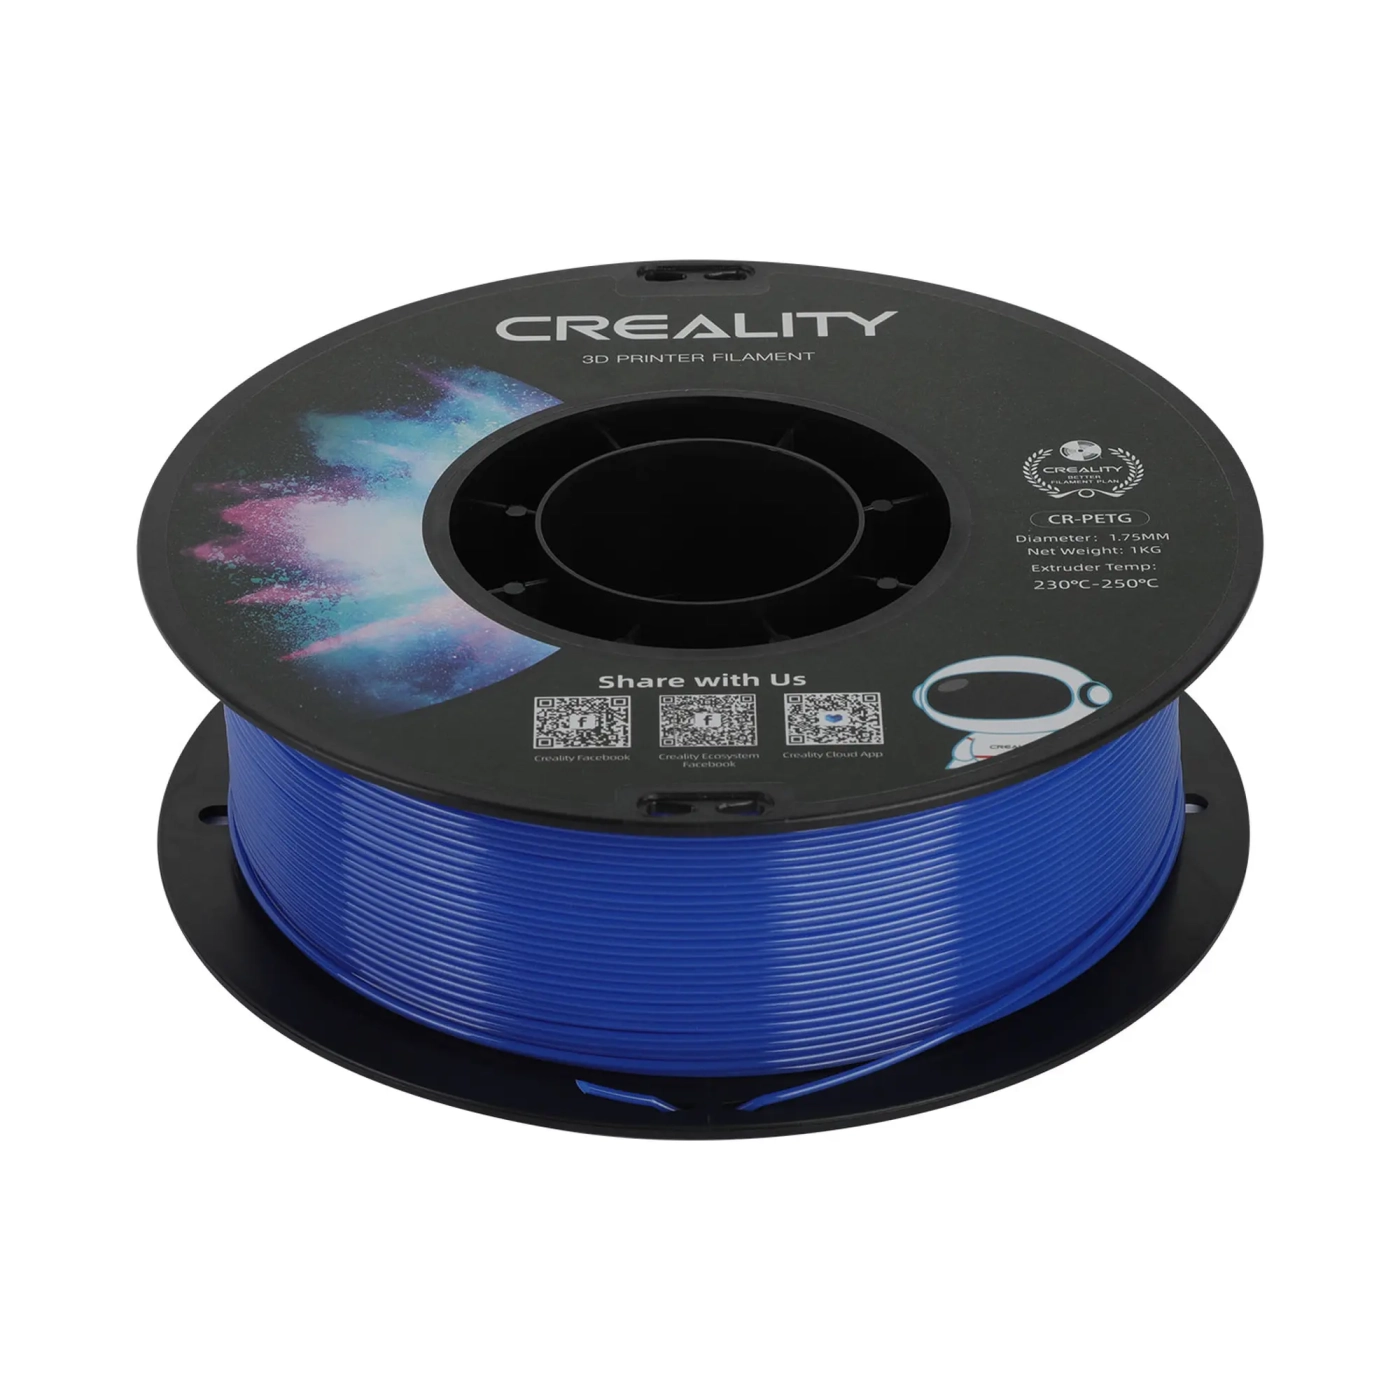 Купить PETG Filament (пластик) для 3D принтера CREALITY 1кг, 1.75мм, синий - фото 4